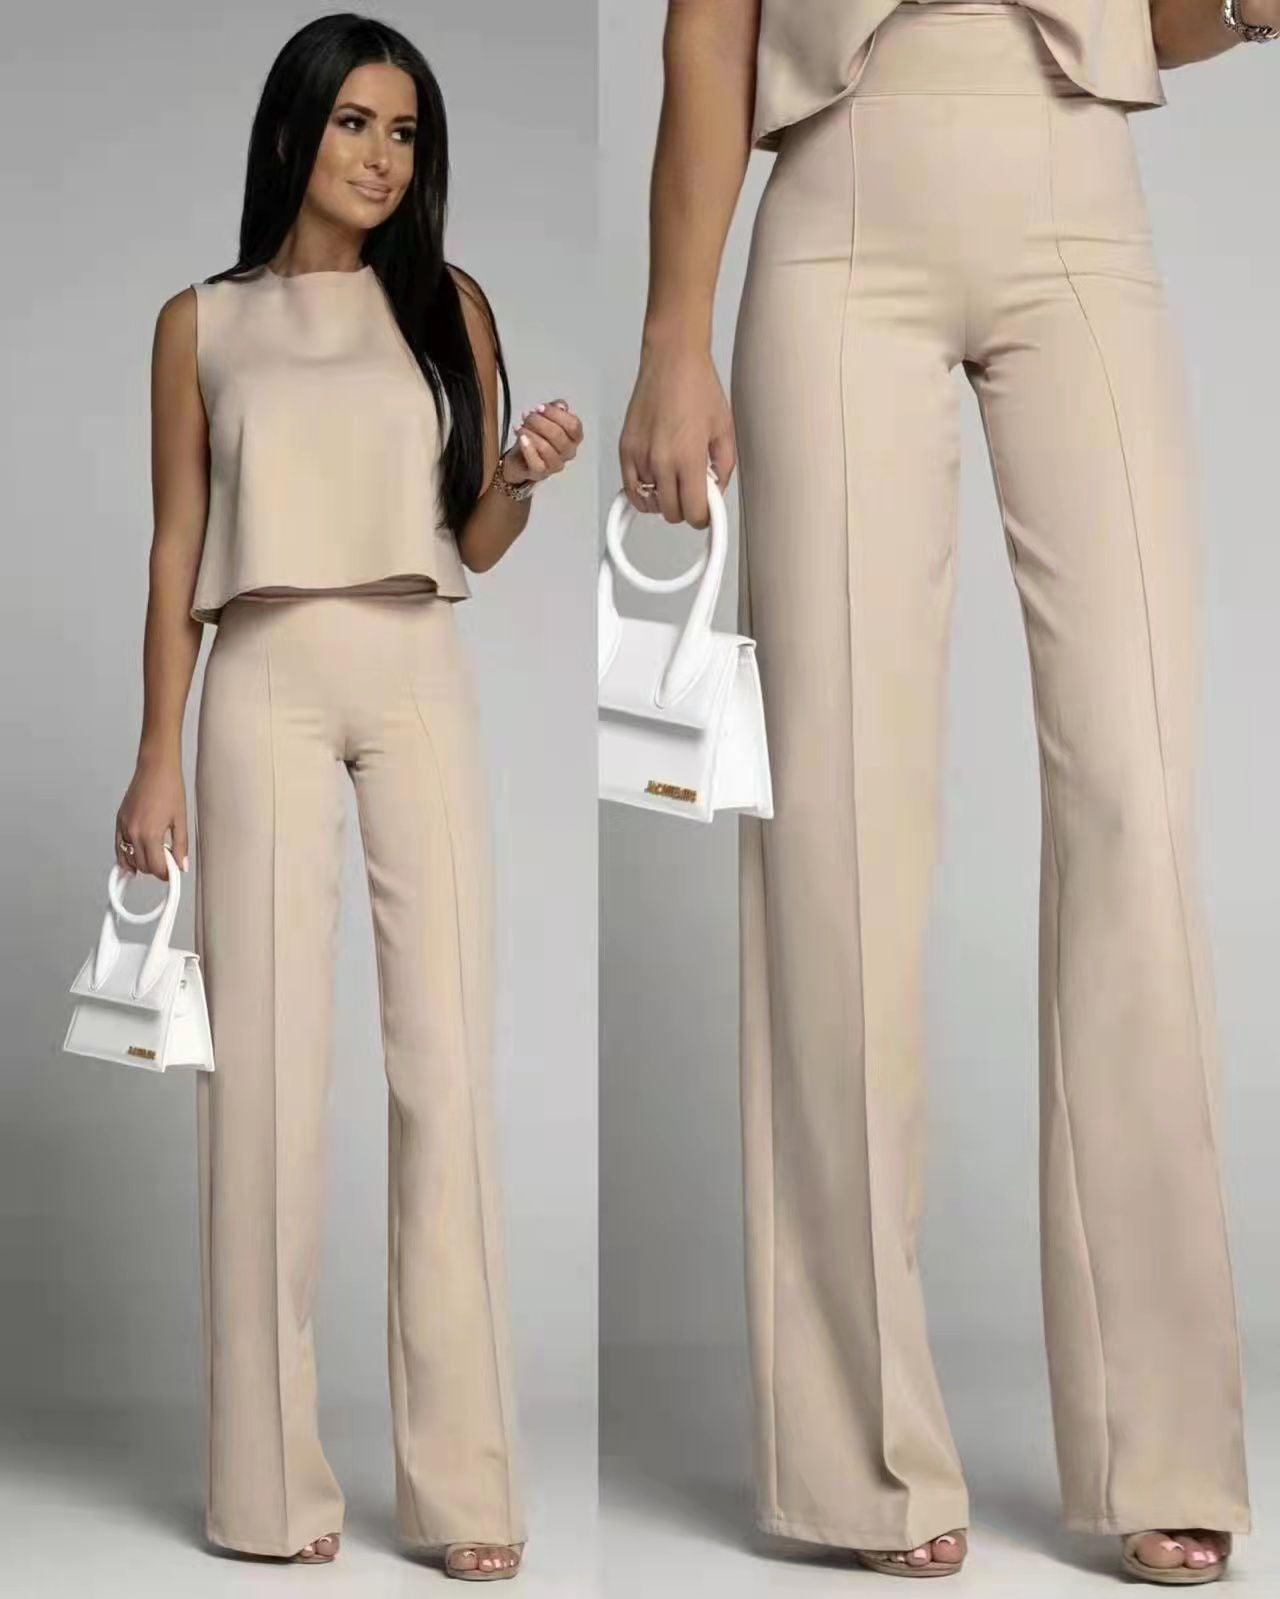 Cordset Miami limited blusa con fiocco sulla schiena e pantalone a zampa - preordine 2-3 giorni lavorativi